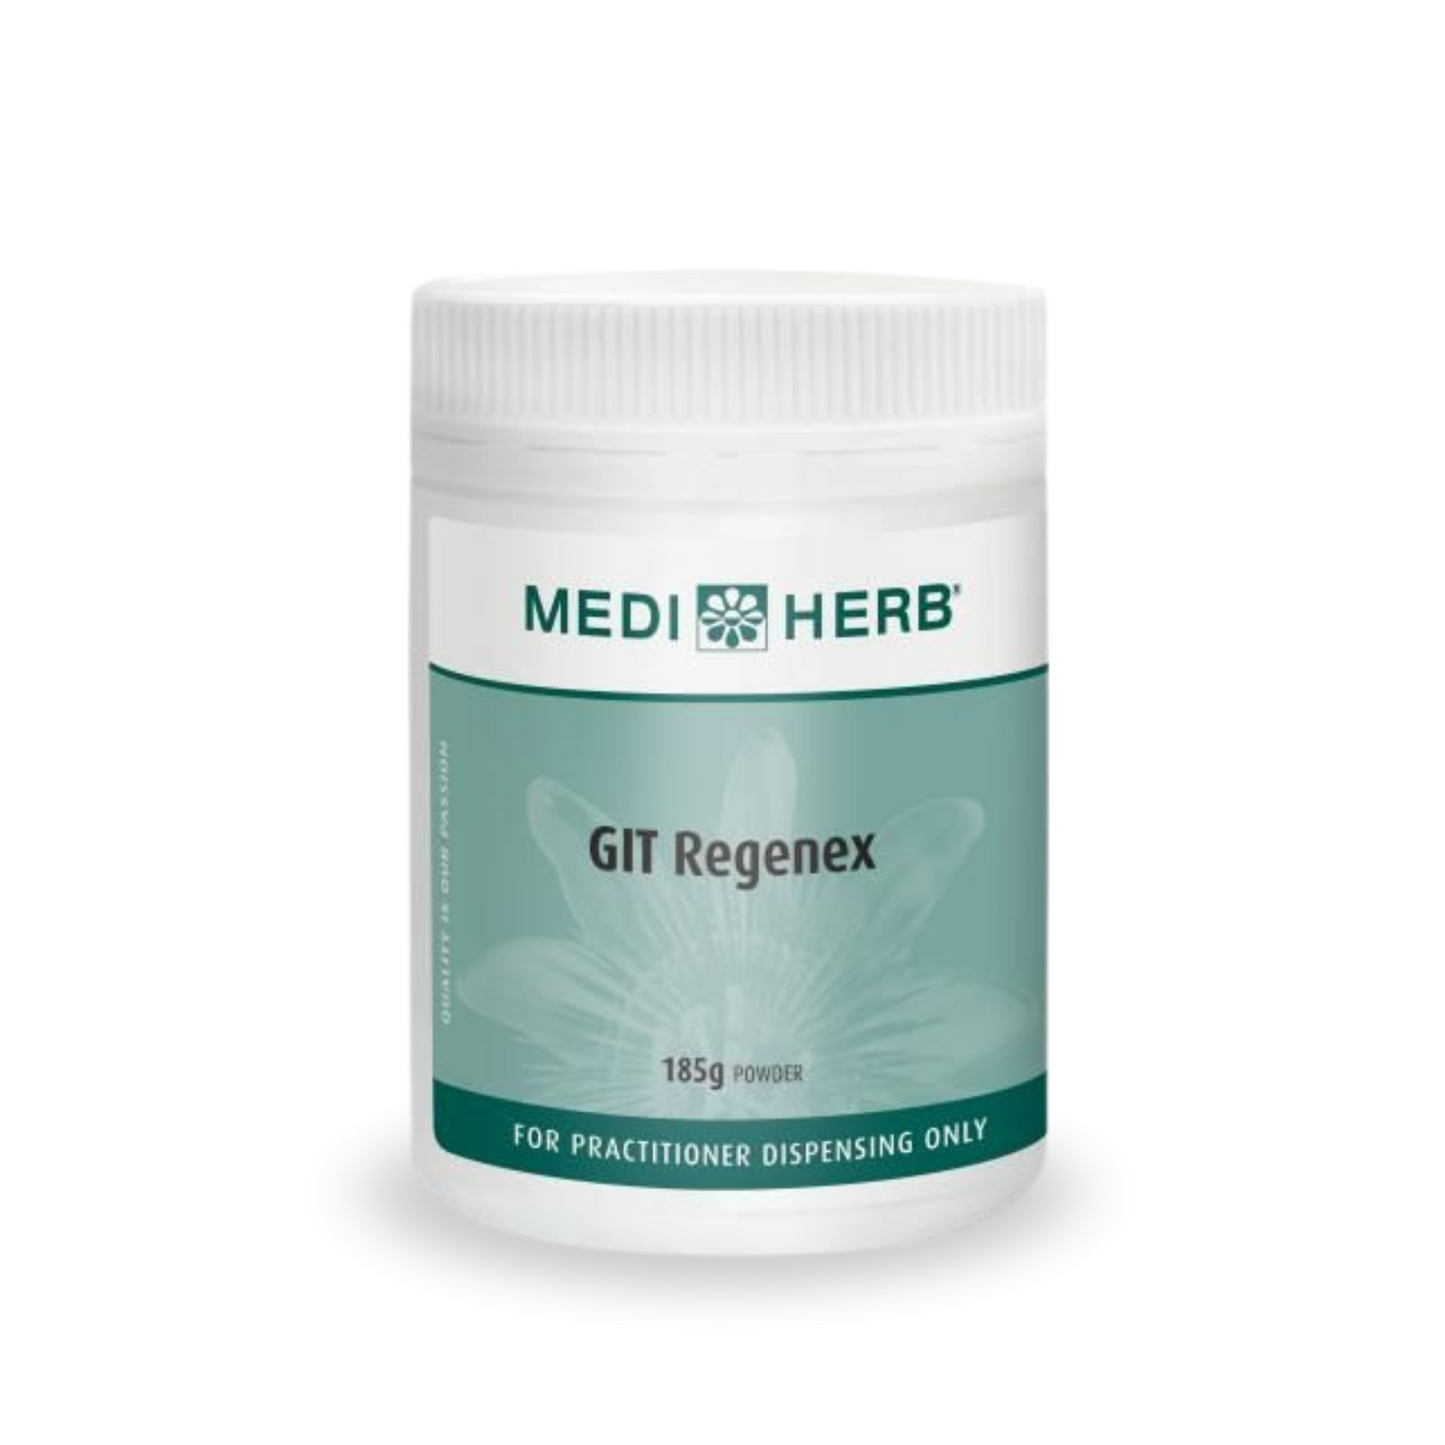 MediHerb GIT Regenex 185g Powder 